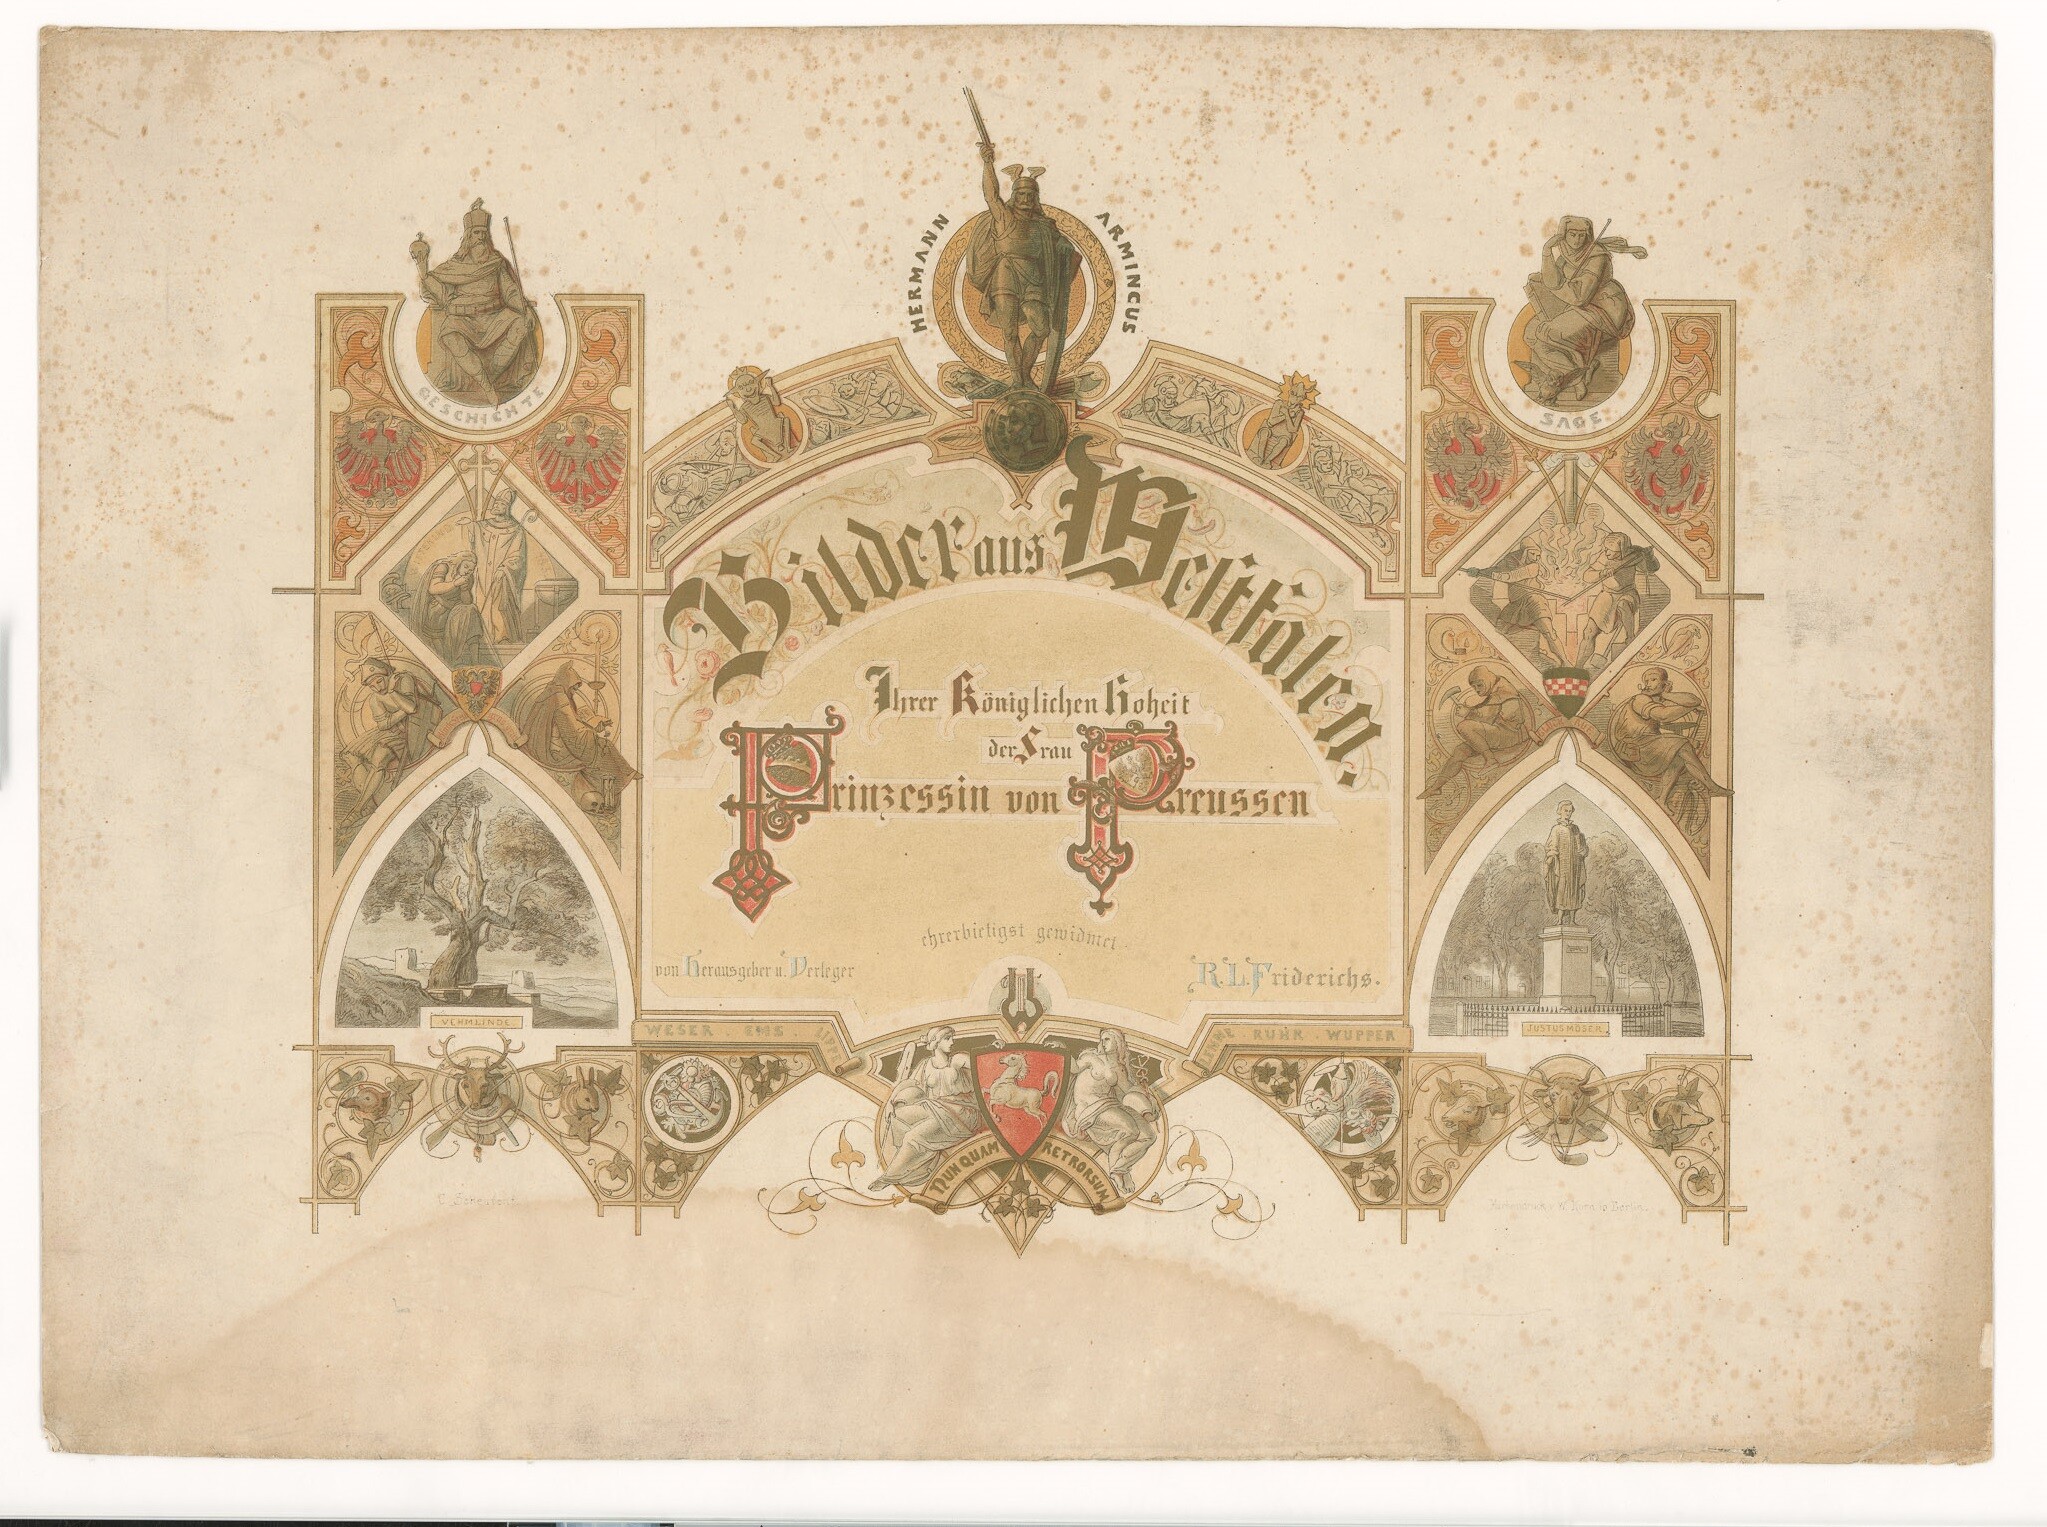 Lithografie mit Titelblatt der Serie "Bilder aus Westfalen" (Museen Burg Altena CC BY-NC-SA)